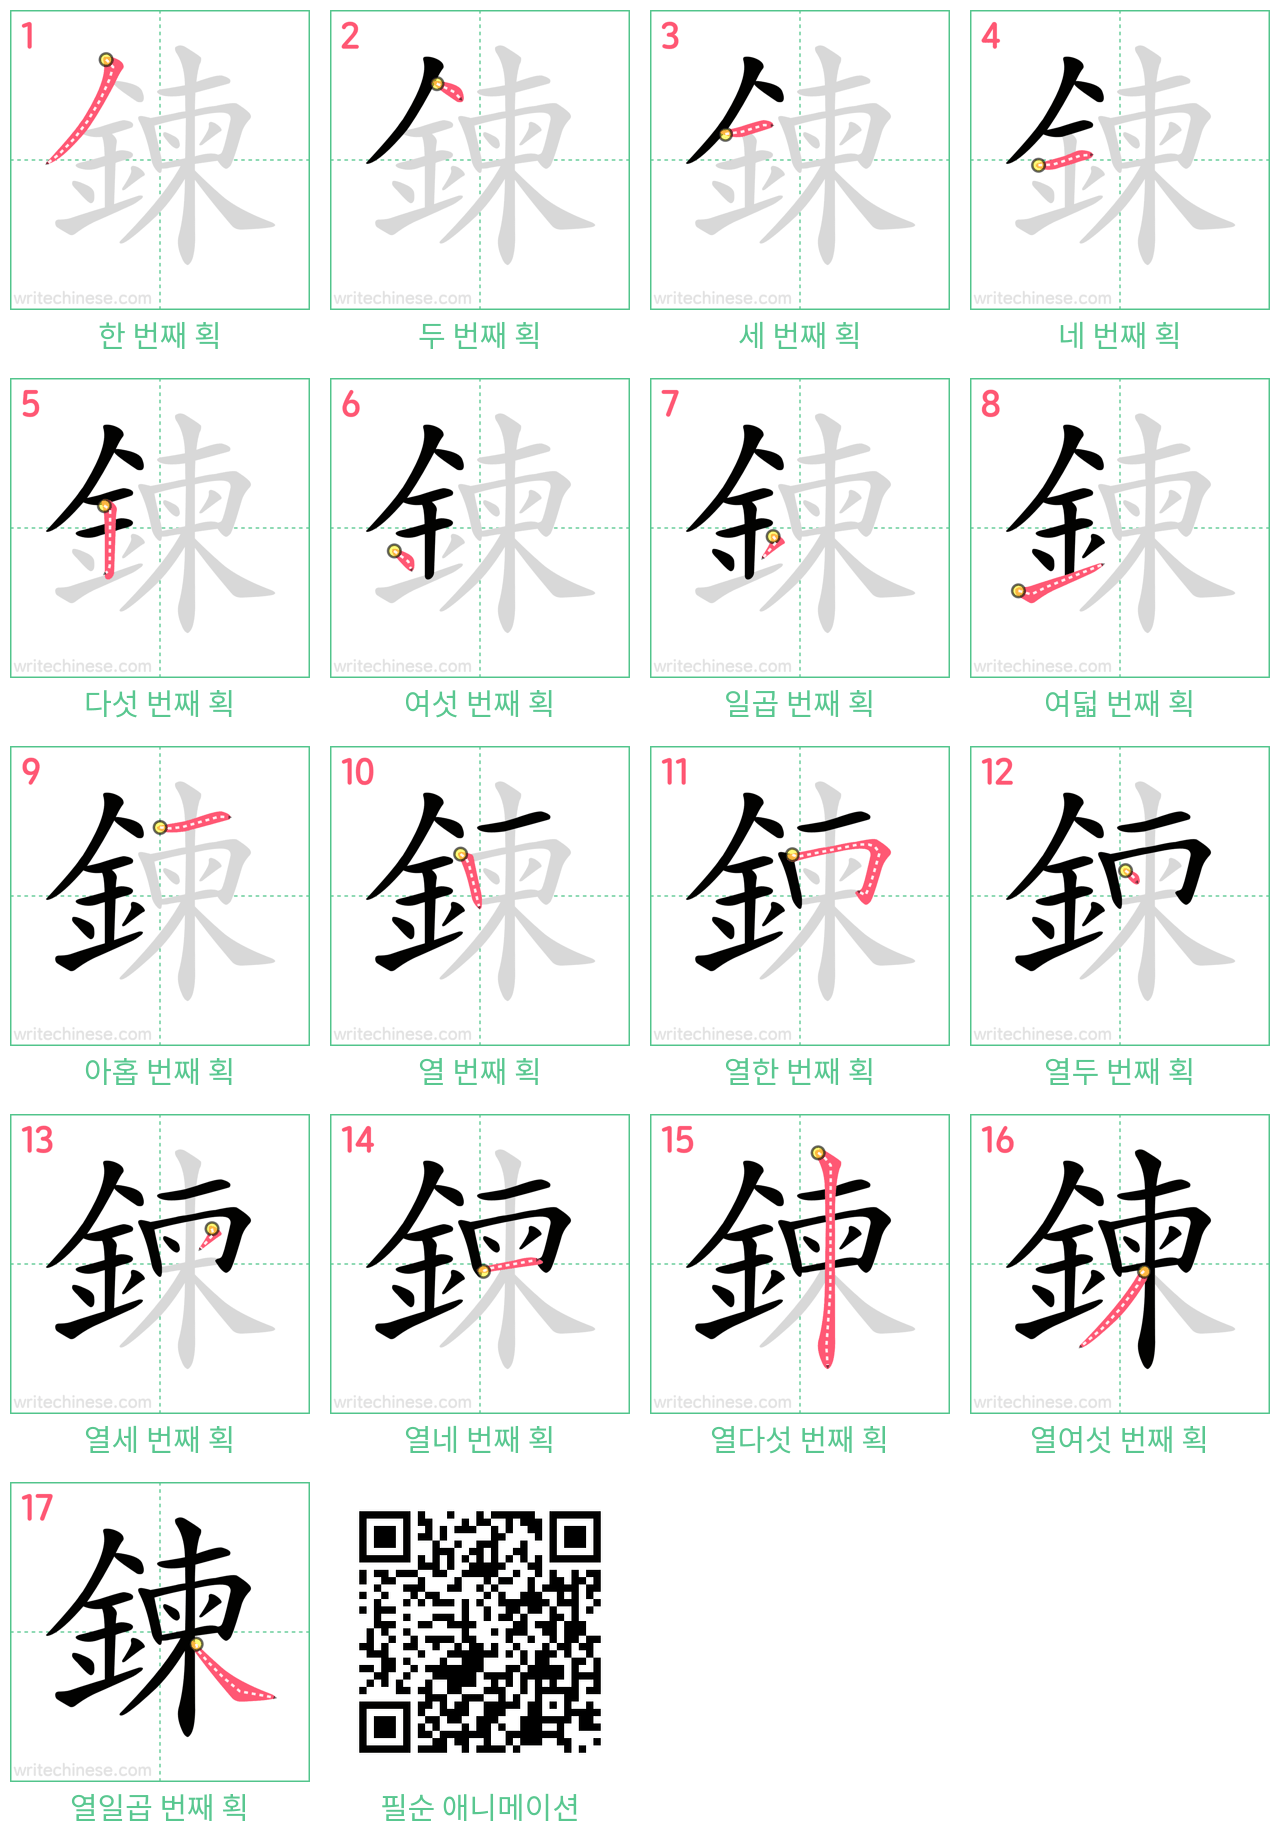 鍊 step-by-step stroke order diagrams